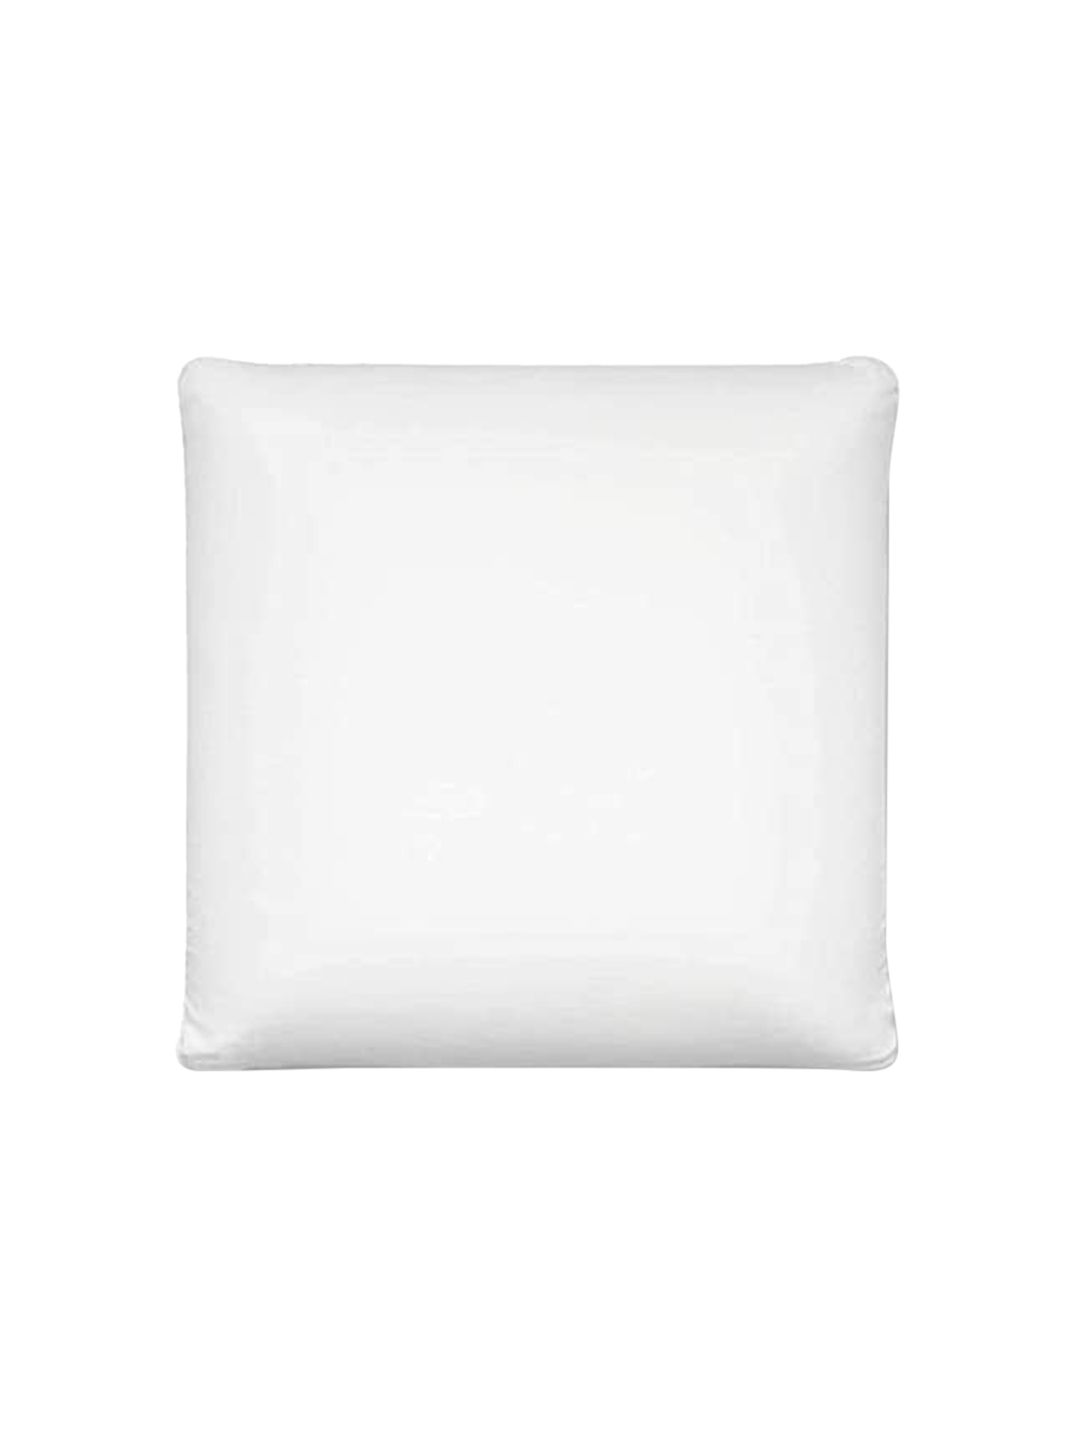 Sleepsia White Memory Foam Pillow Price in India